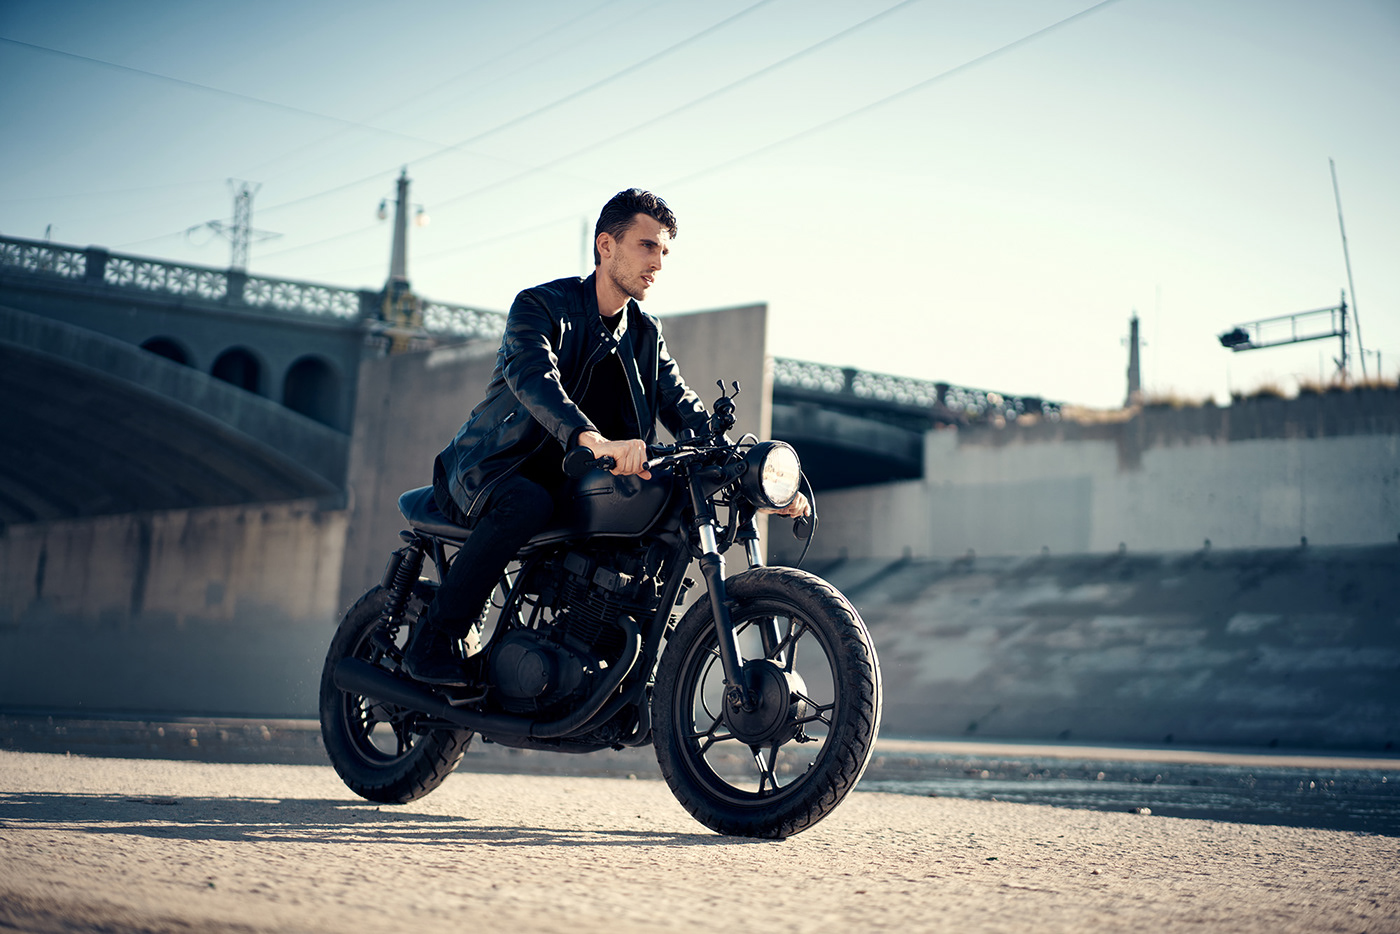 motorcycle moto bikelife biker Suzuki lariver DMITRYBOCHAROV sonya7rIII Sony55mm lifestyle